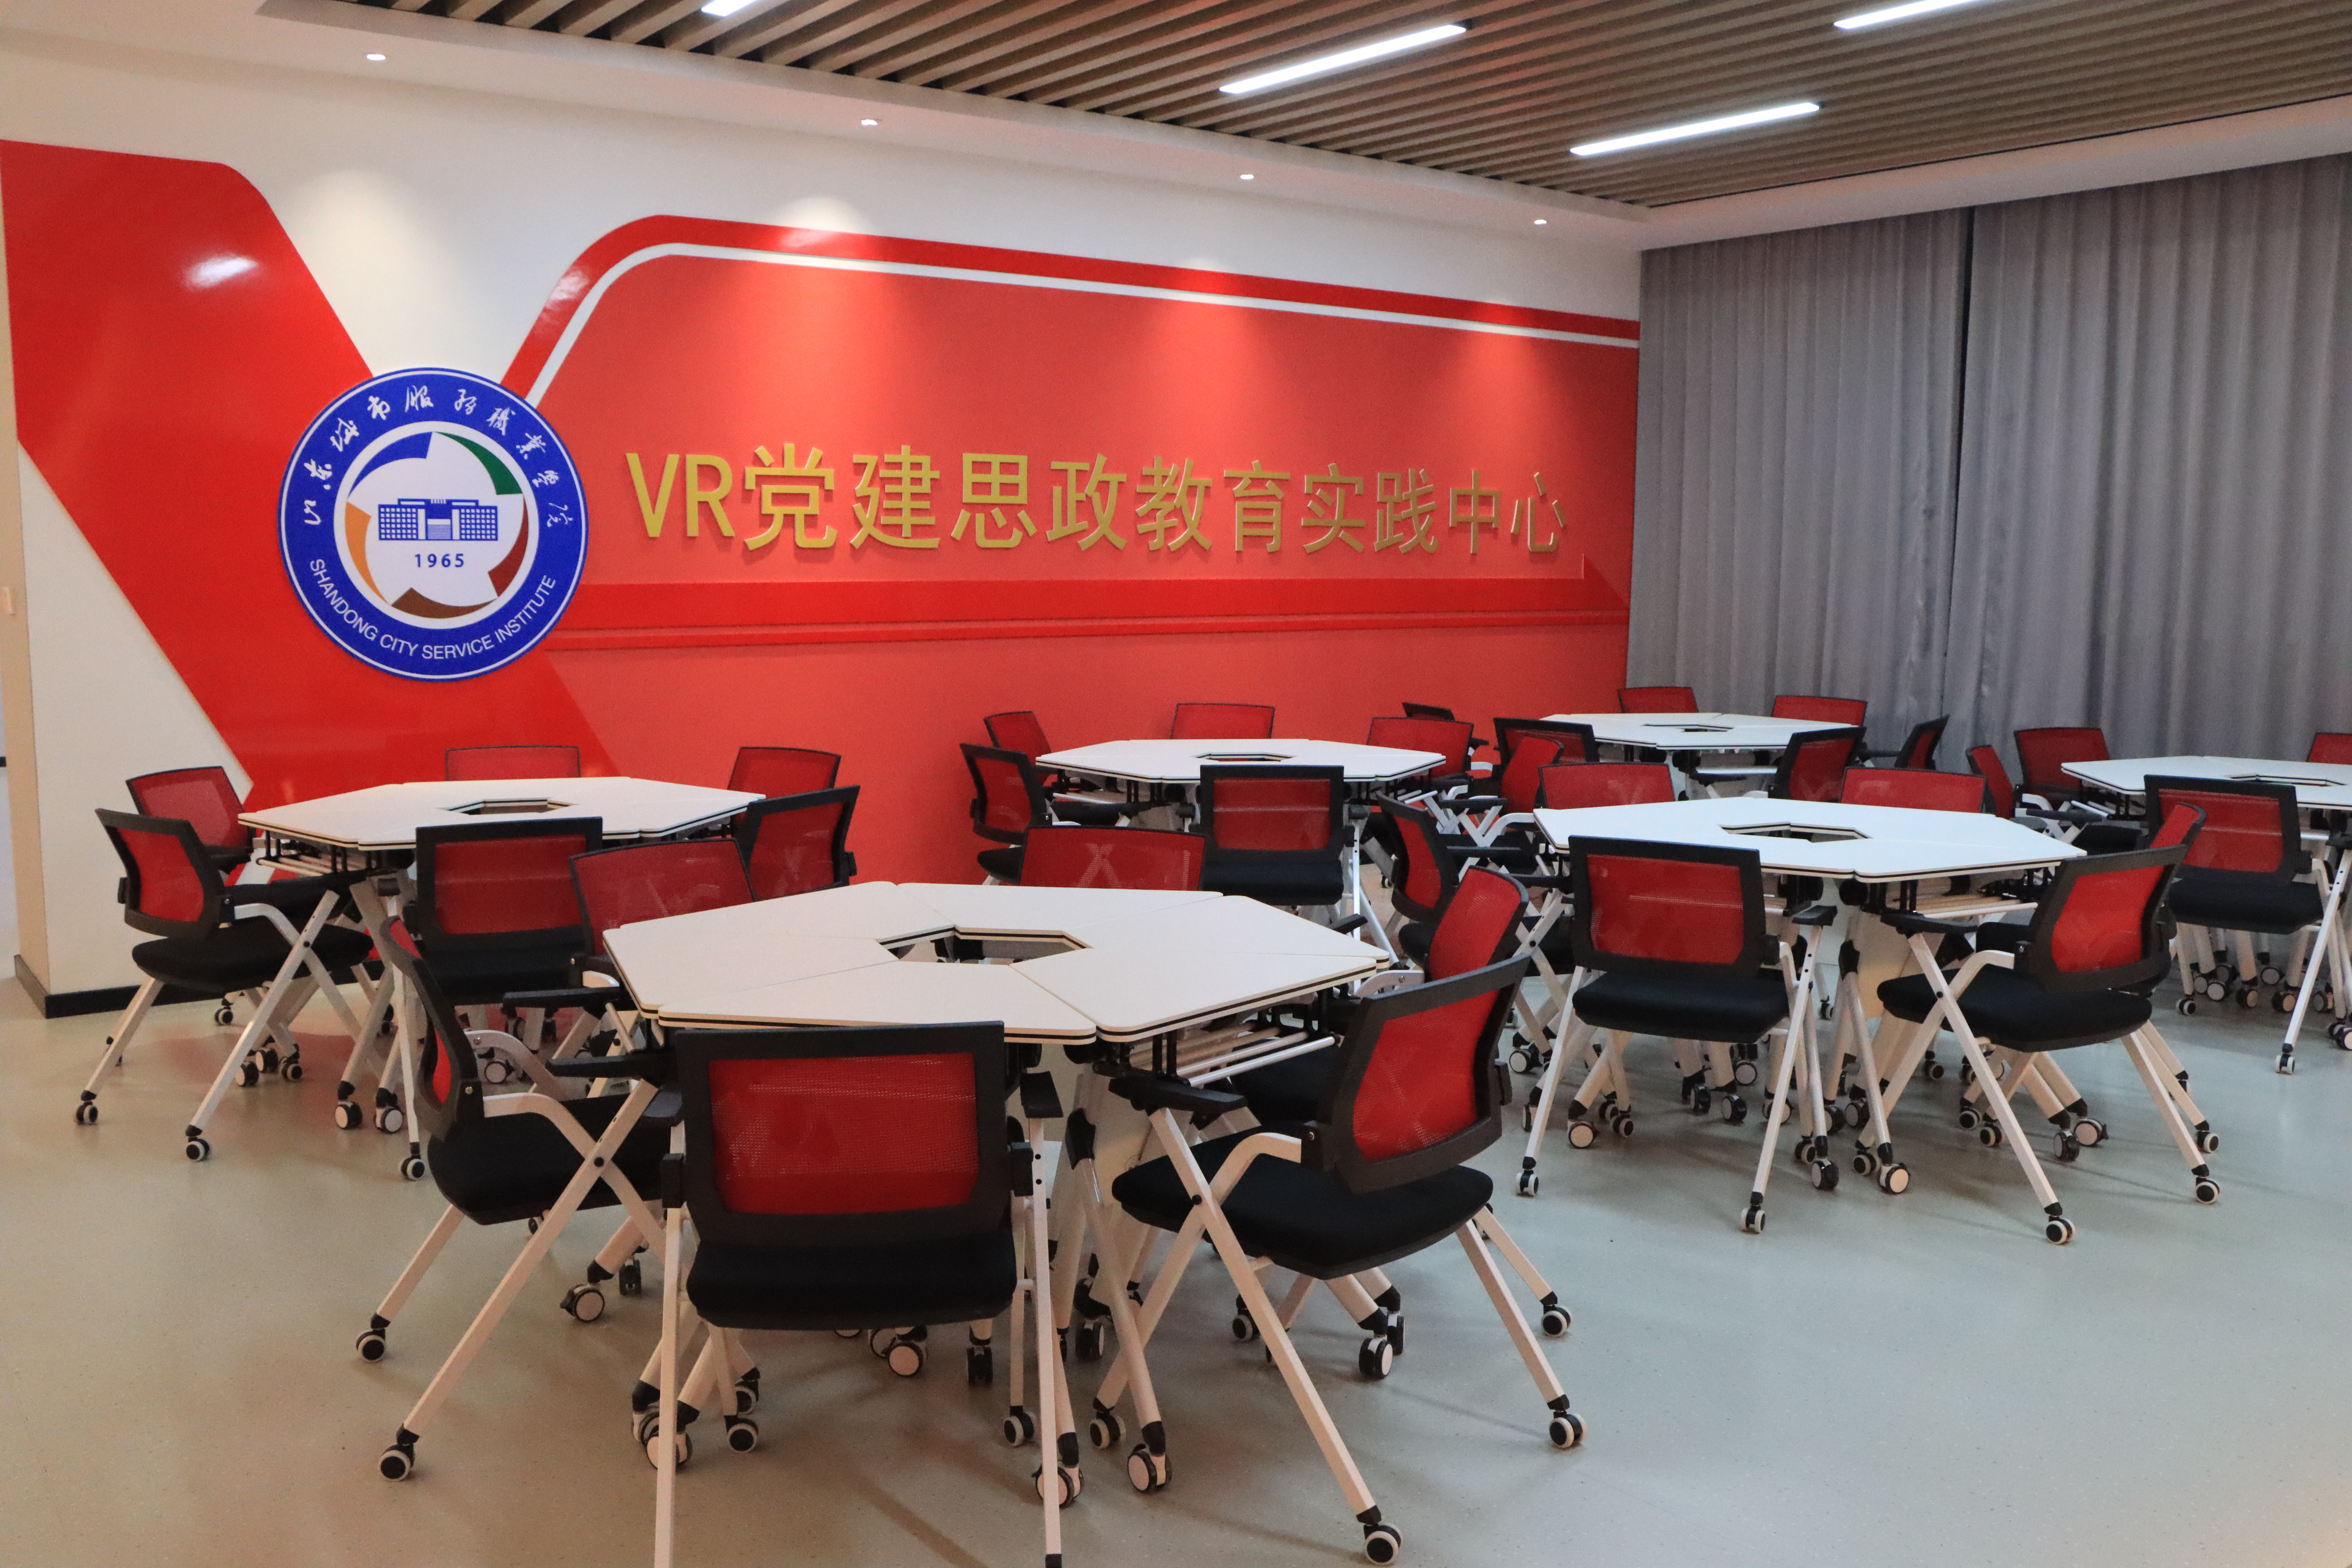 VR眼鏡交互教室